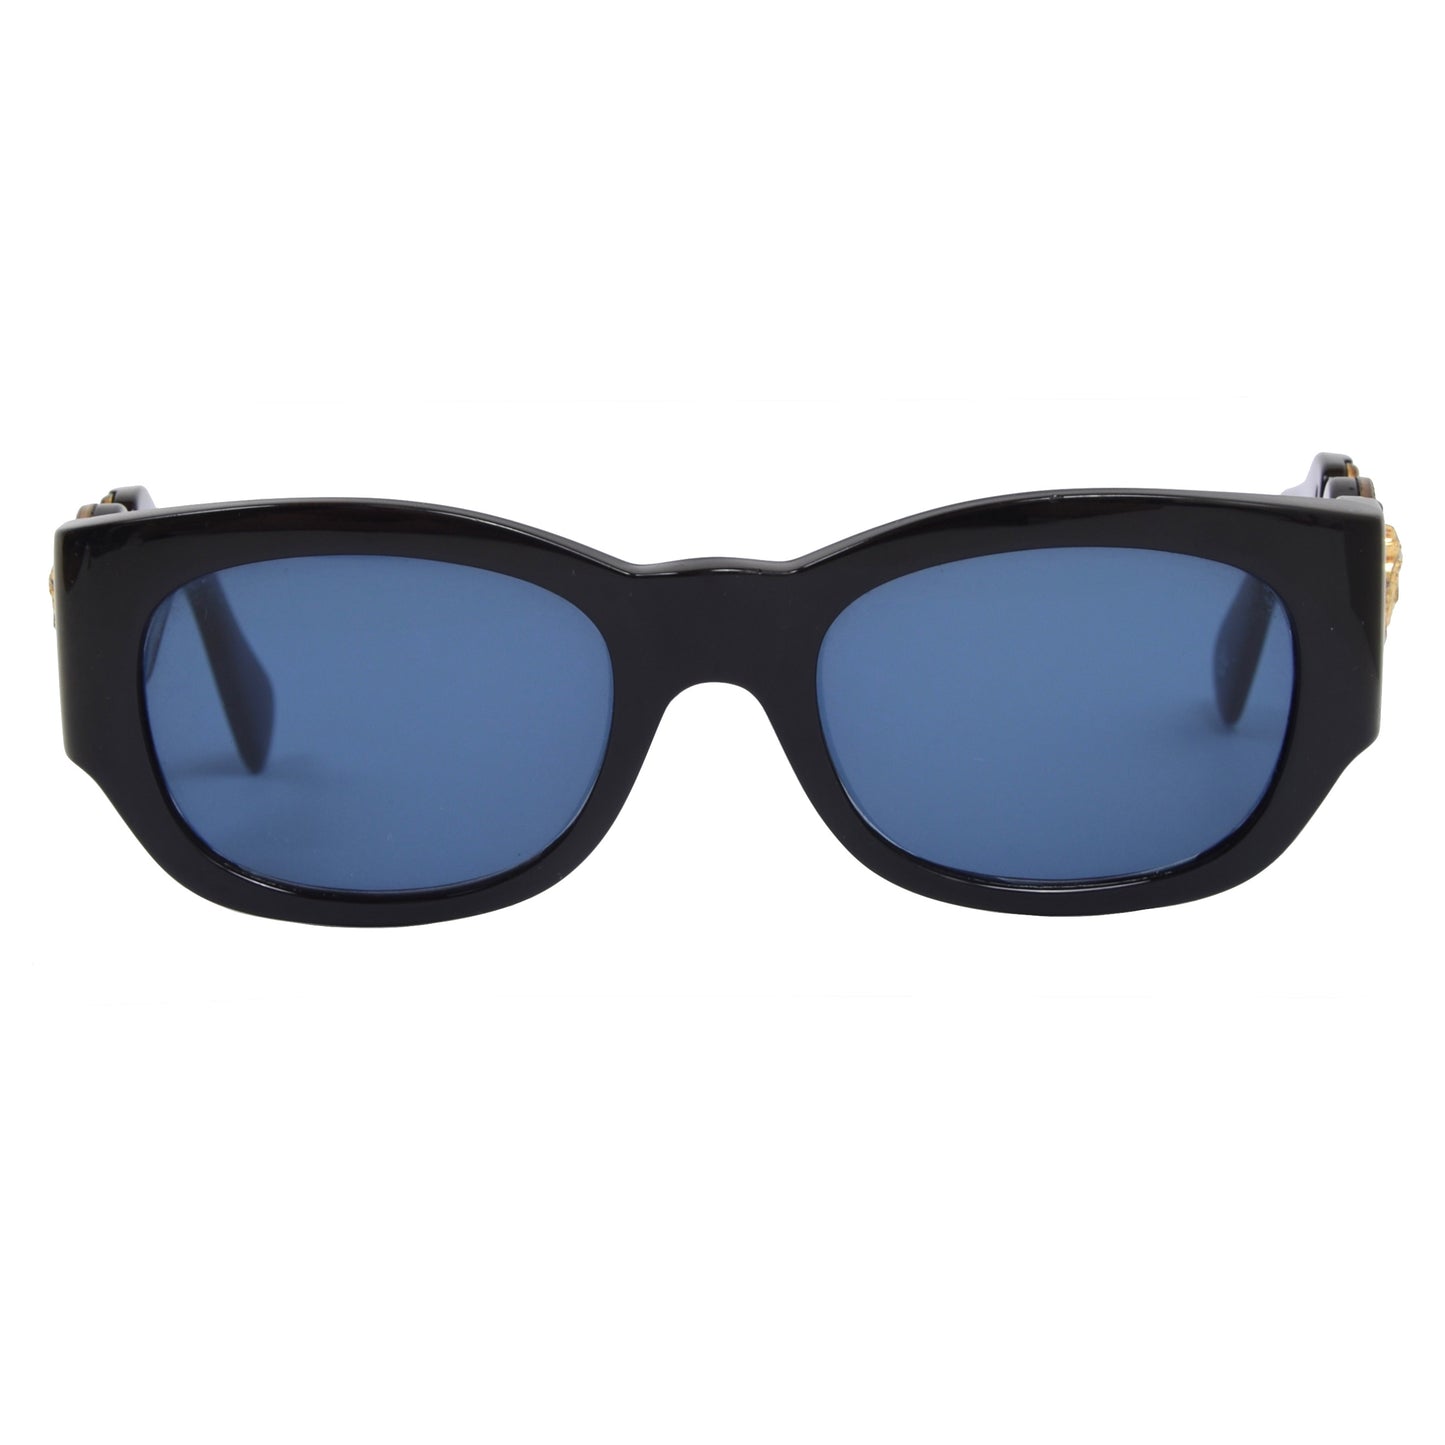 Vintage Gianni Versace Mod 413 Col 852 Sonnenbrille - schwarz